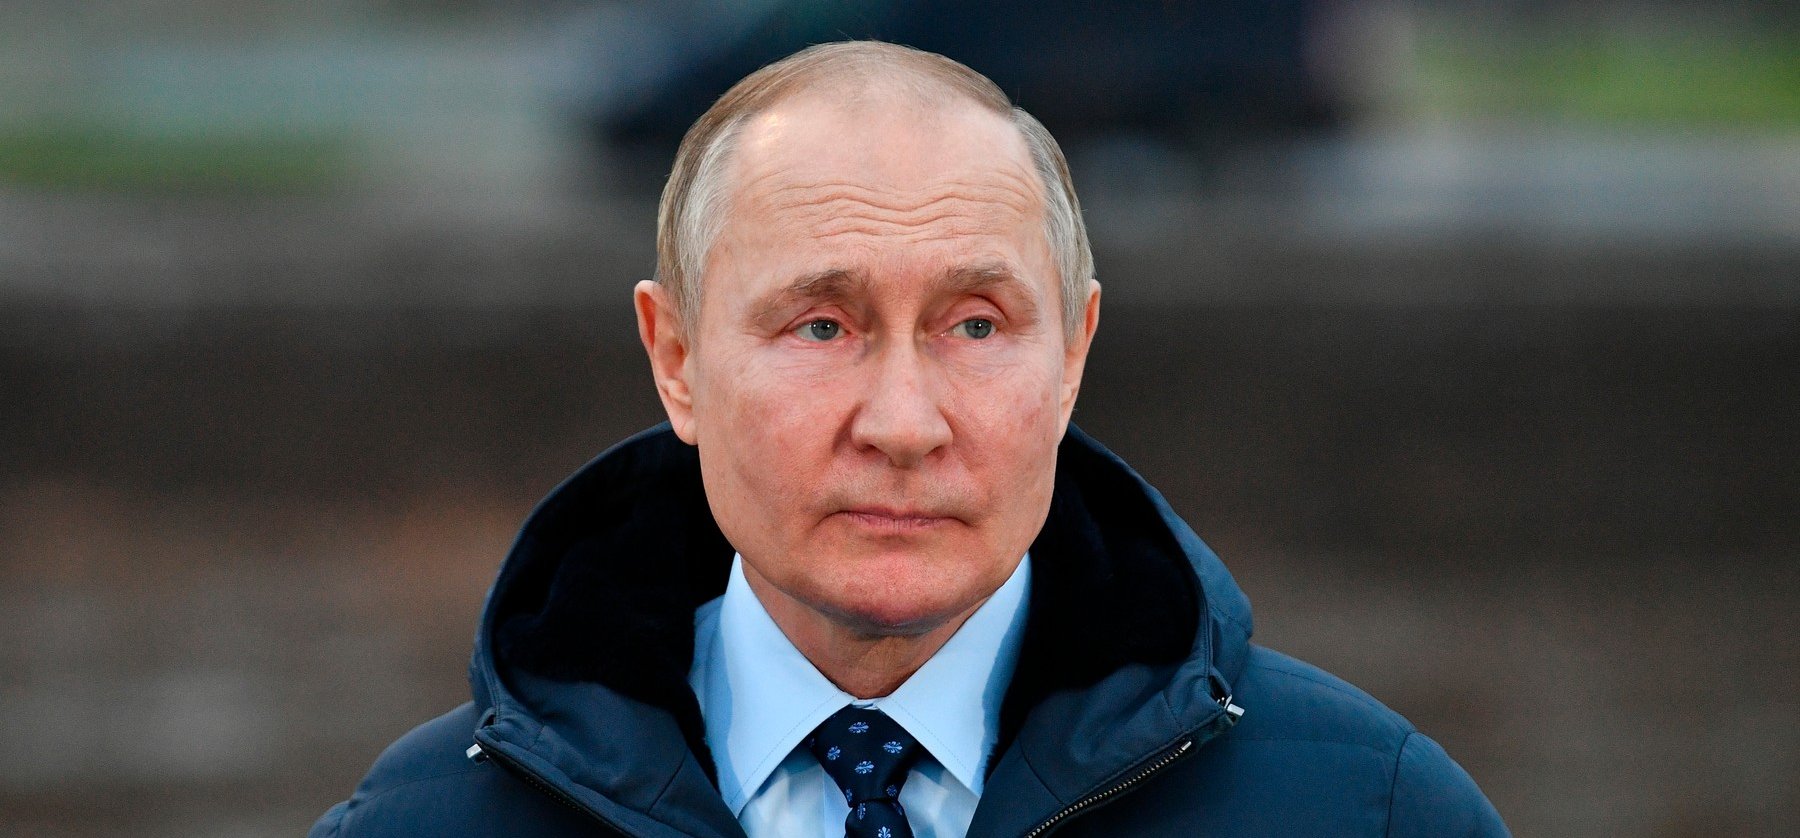 Putyin nem várt bejelentést tett: ez komoly fordulatot hozhat a háborúban